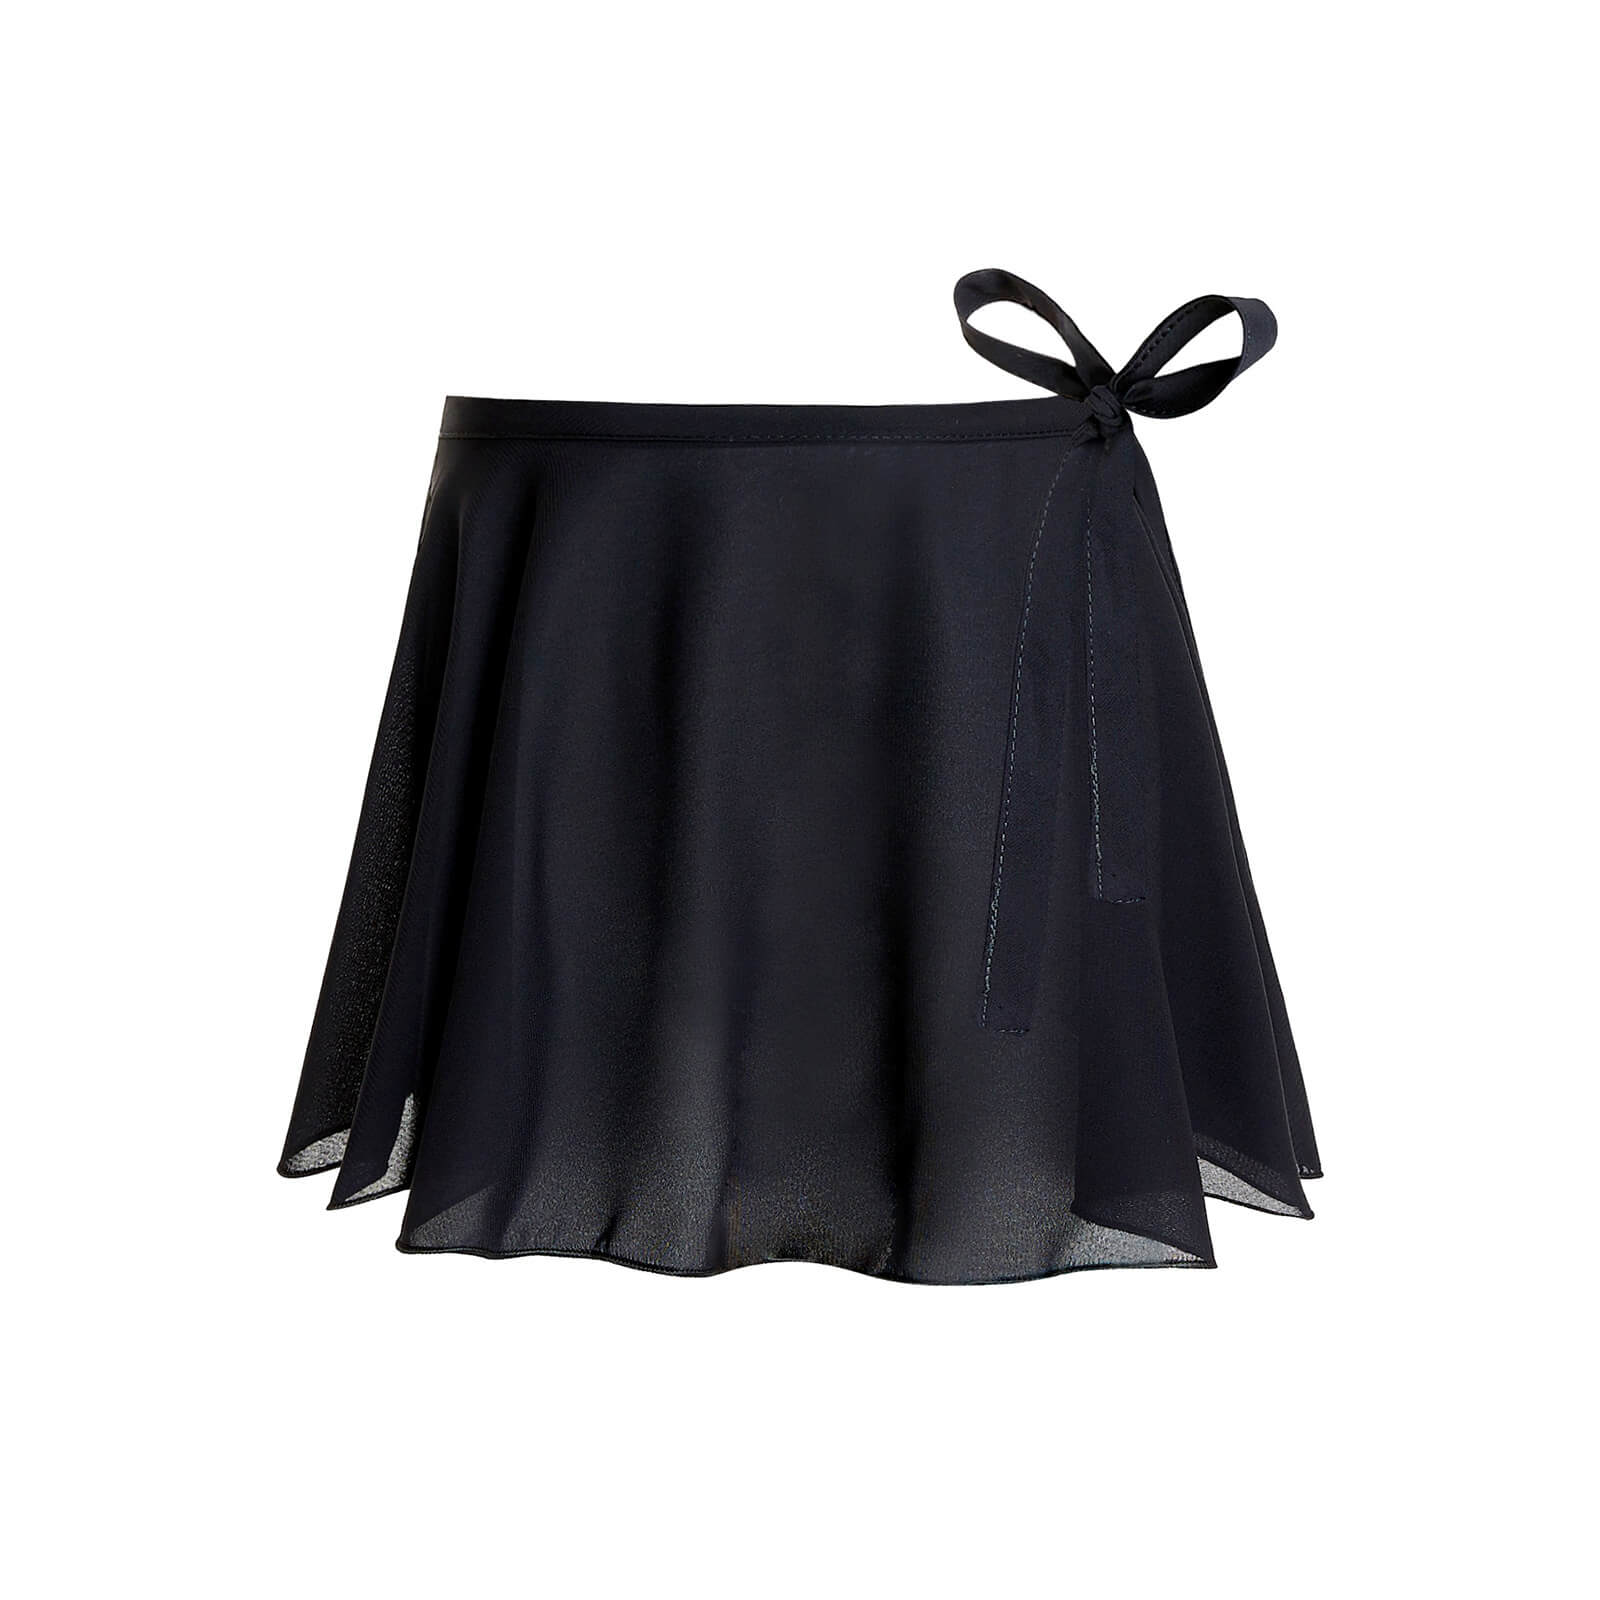 girls black dance skirt